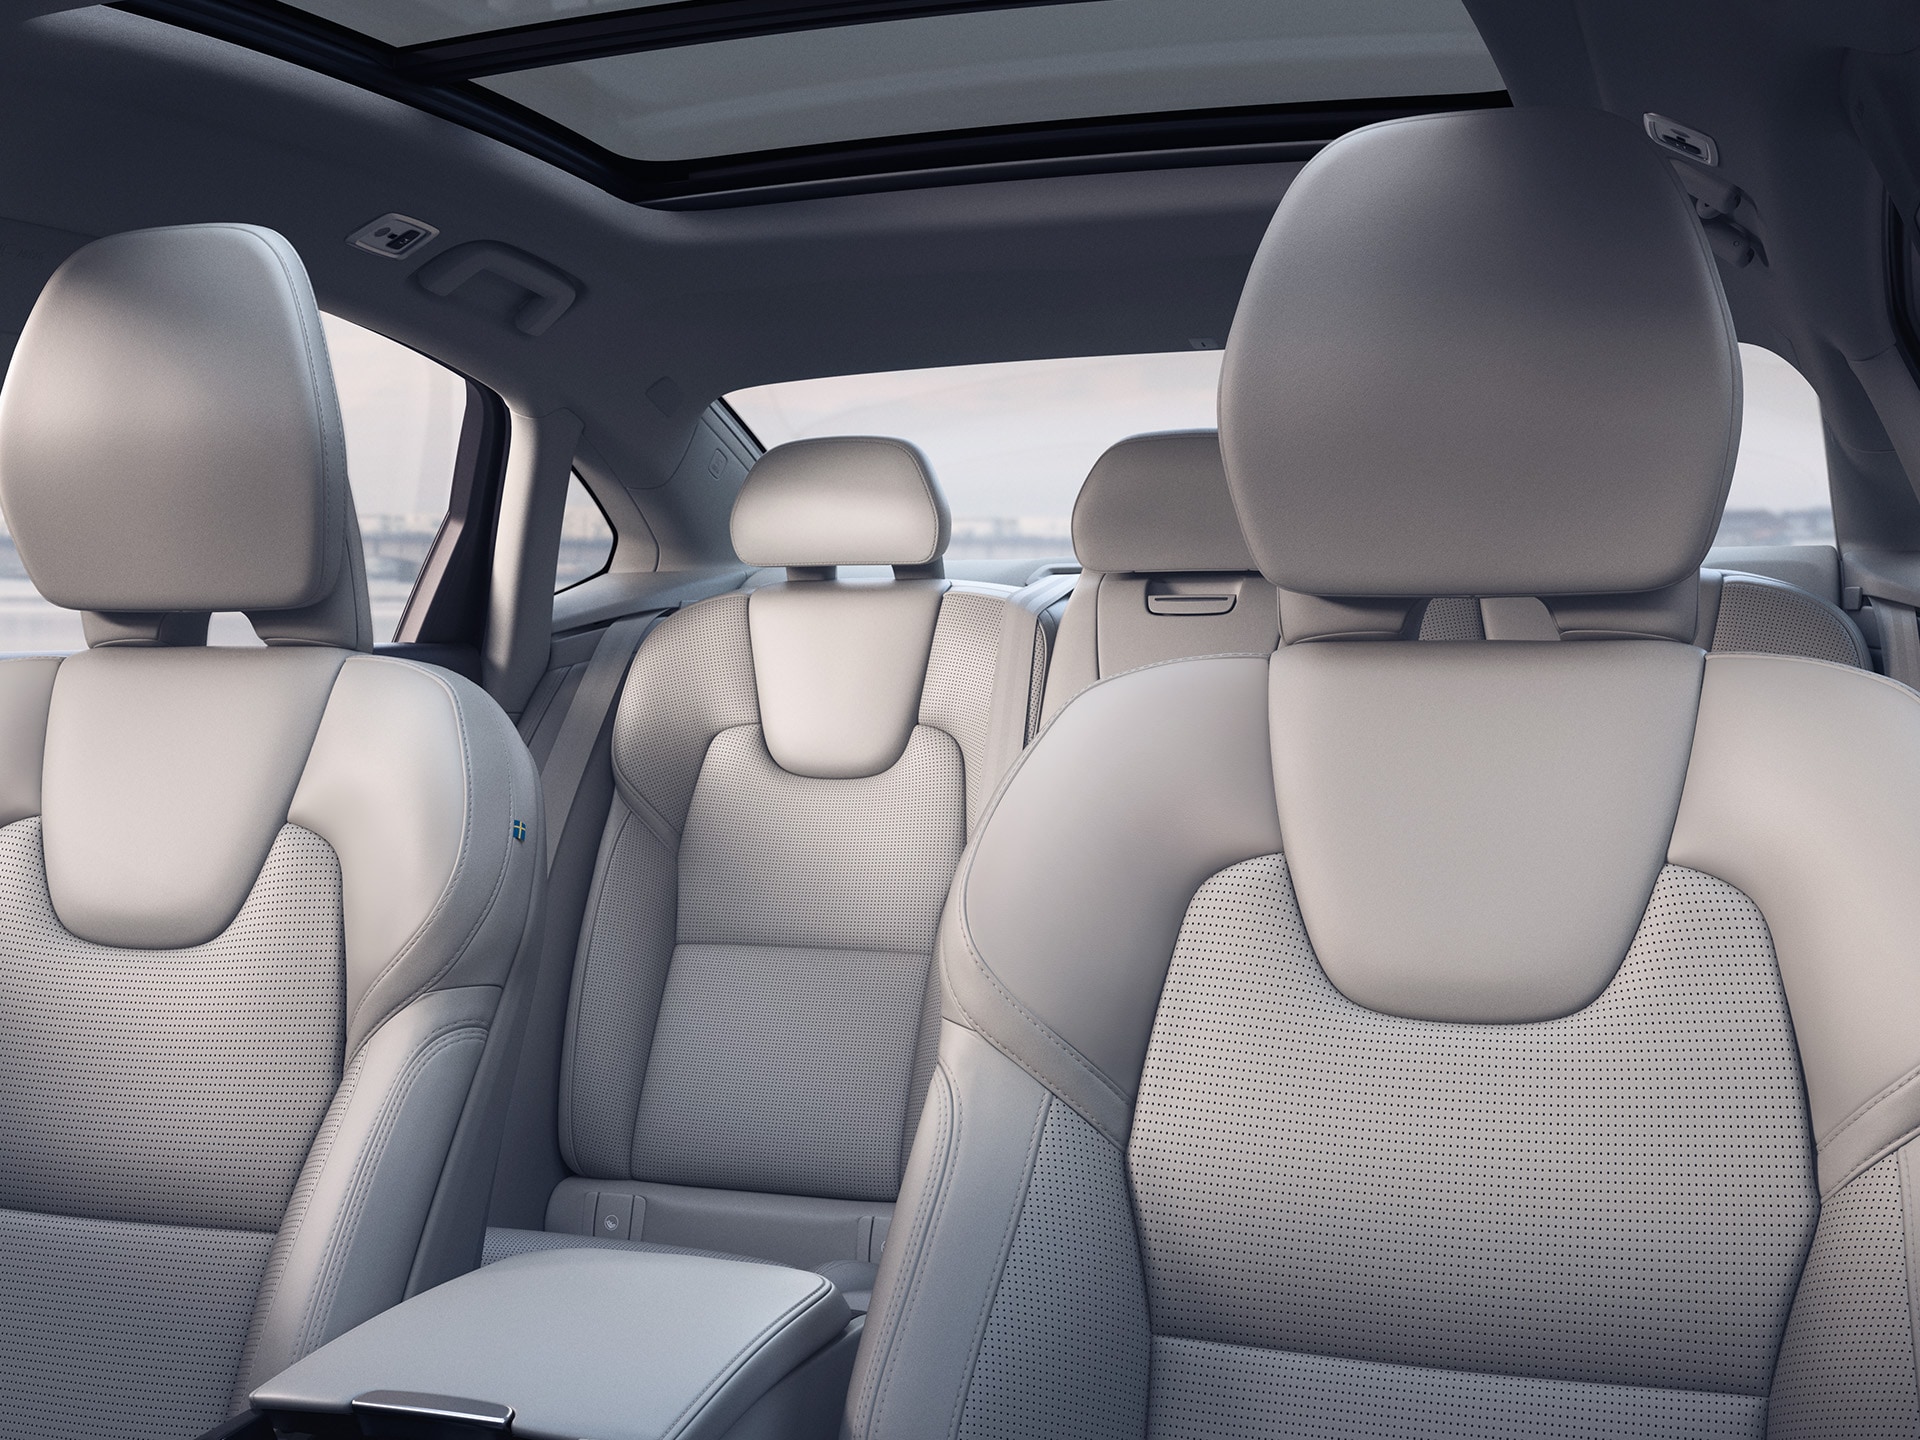 Вид изнутри седана Volvo, светло-бежевый салон